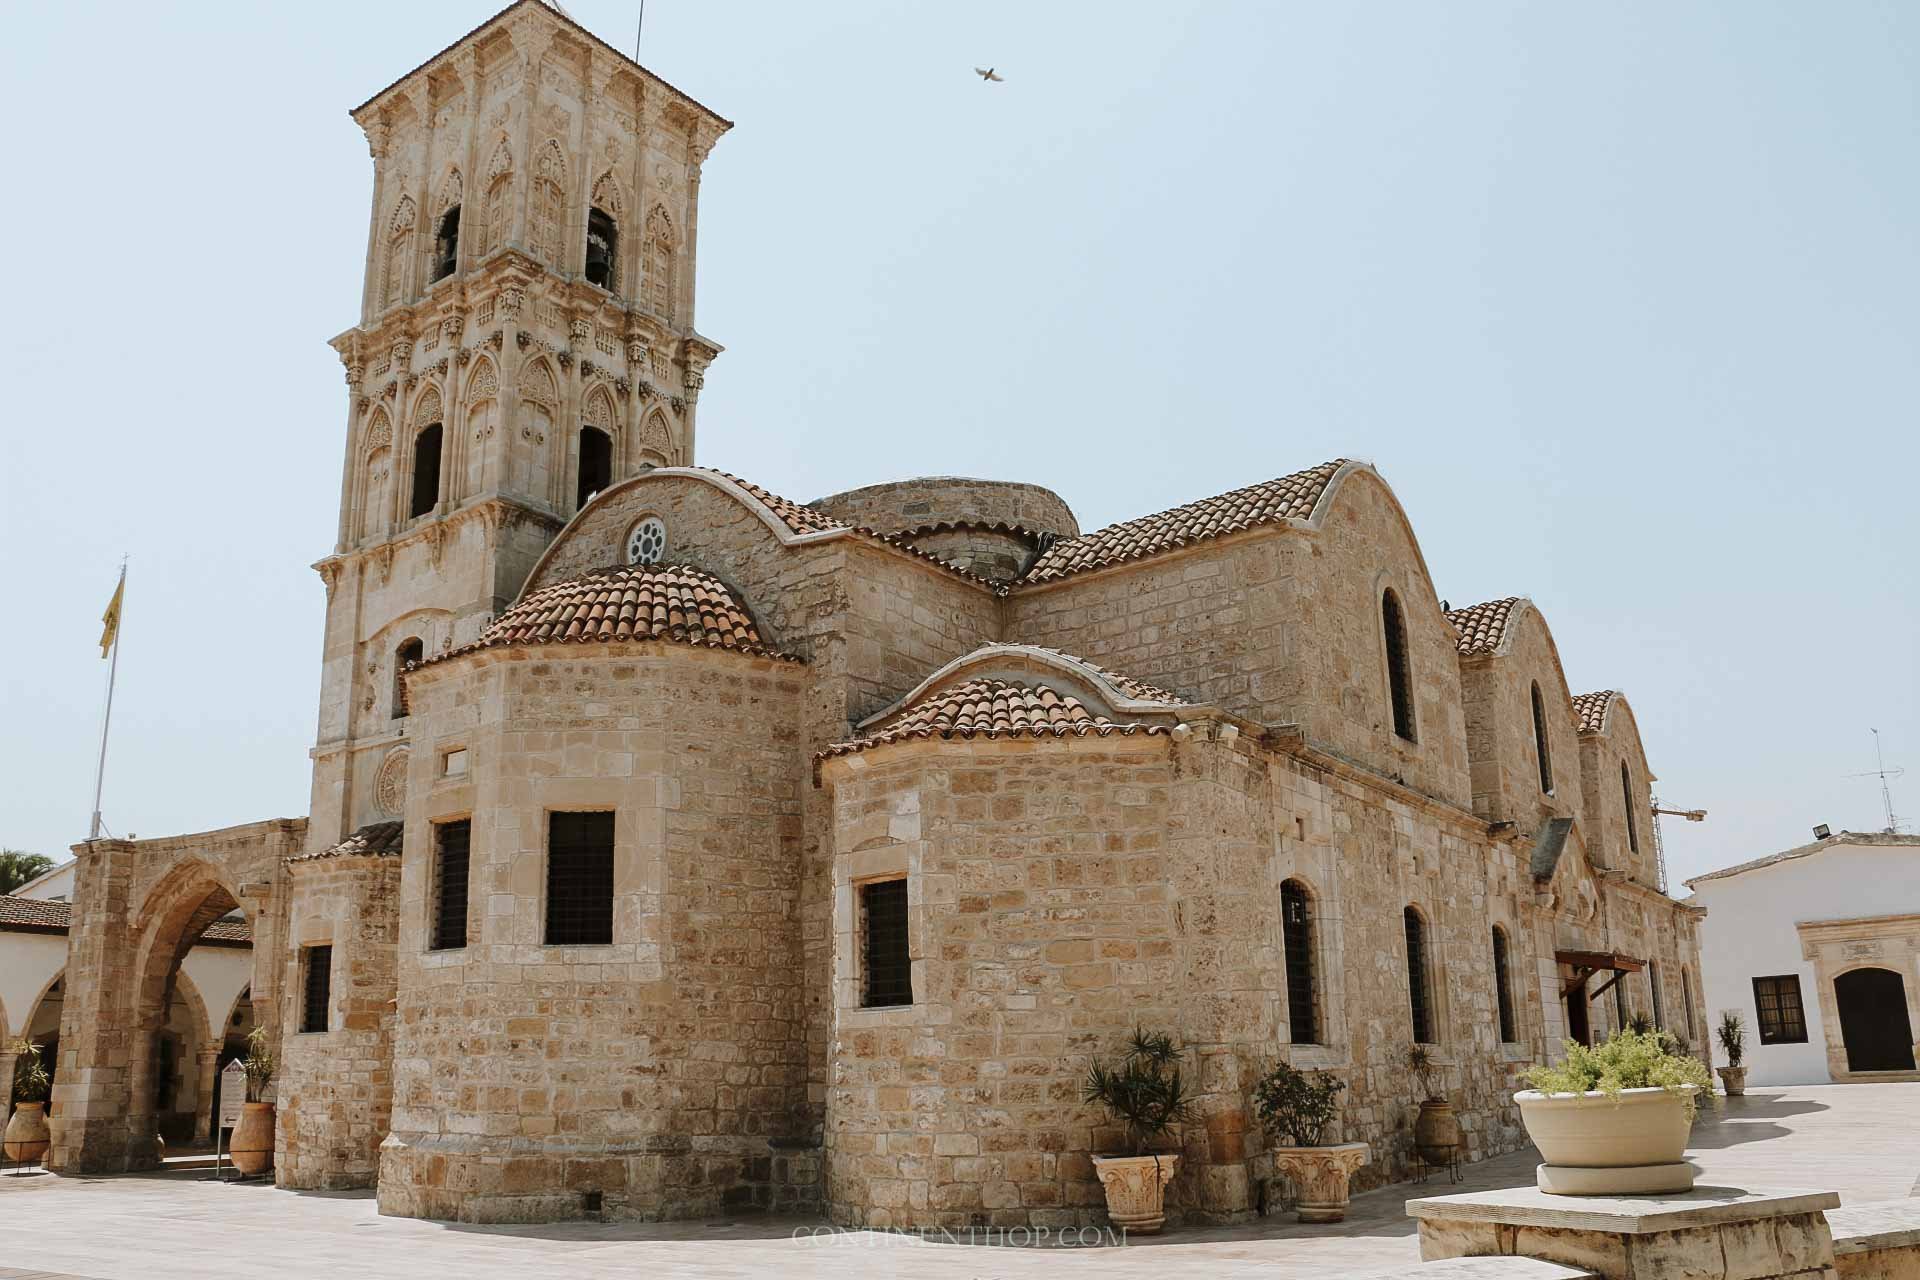 See Church in Nicosia in 1 week in Cyprus